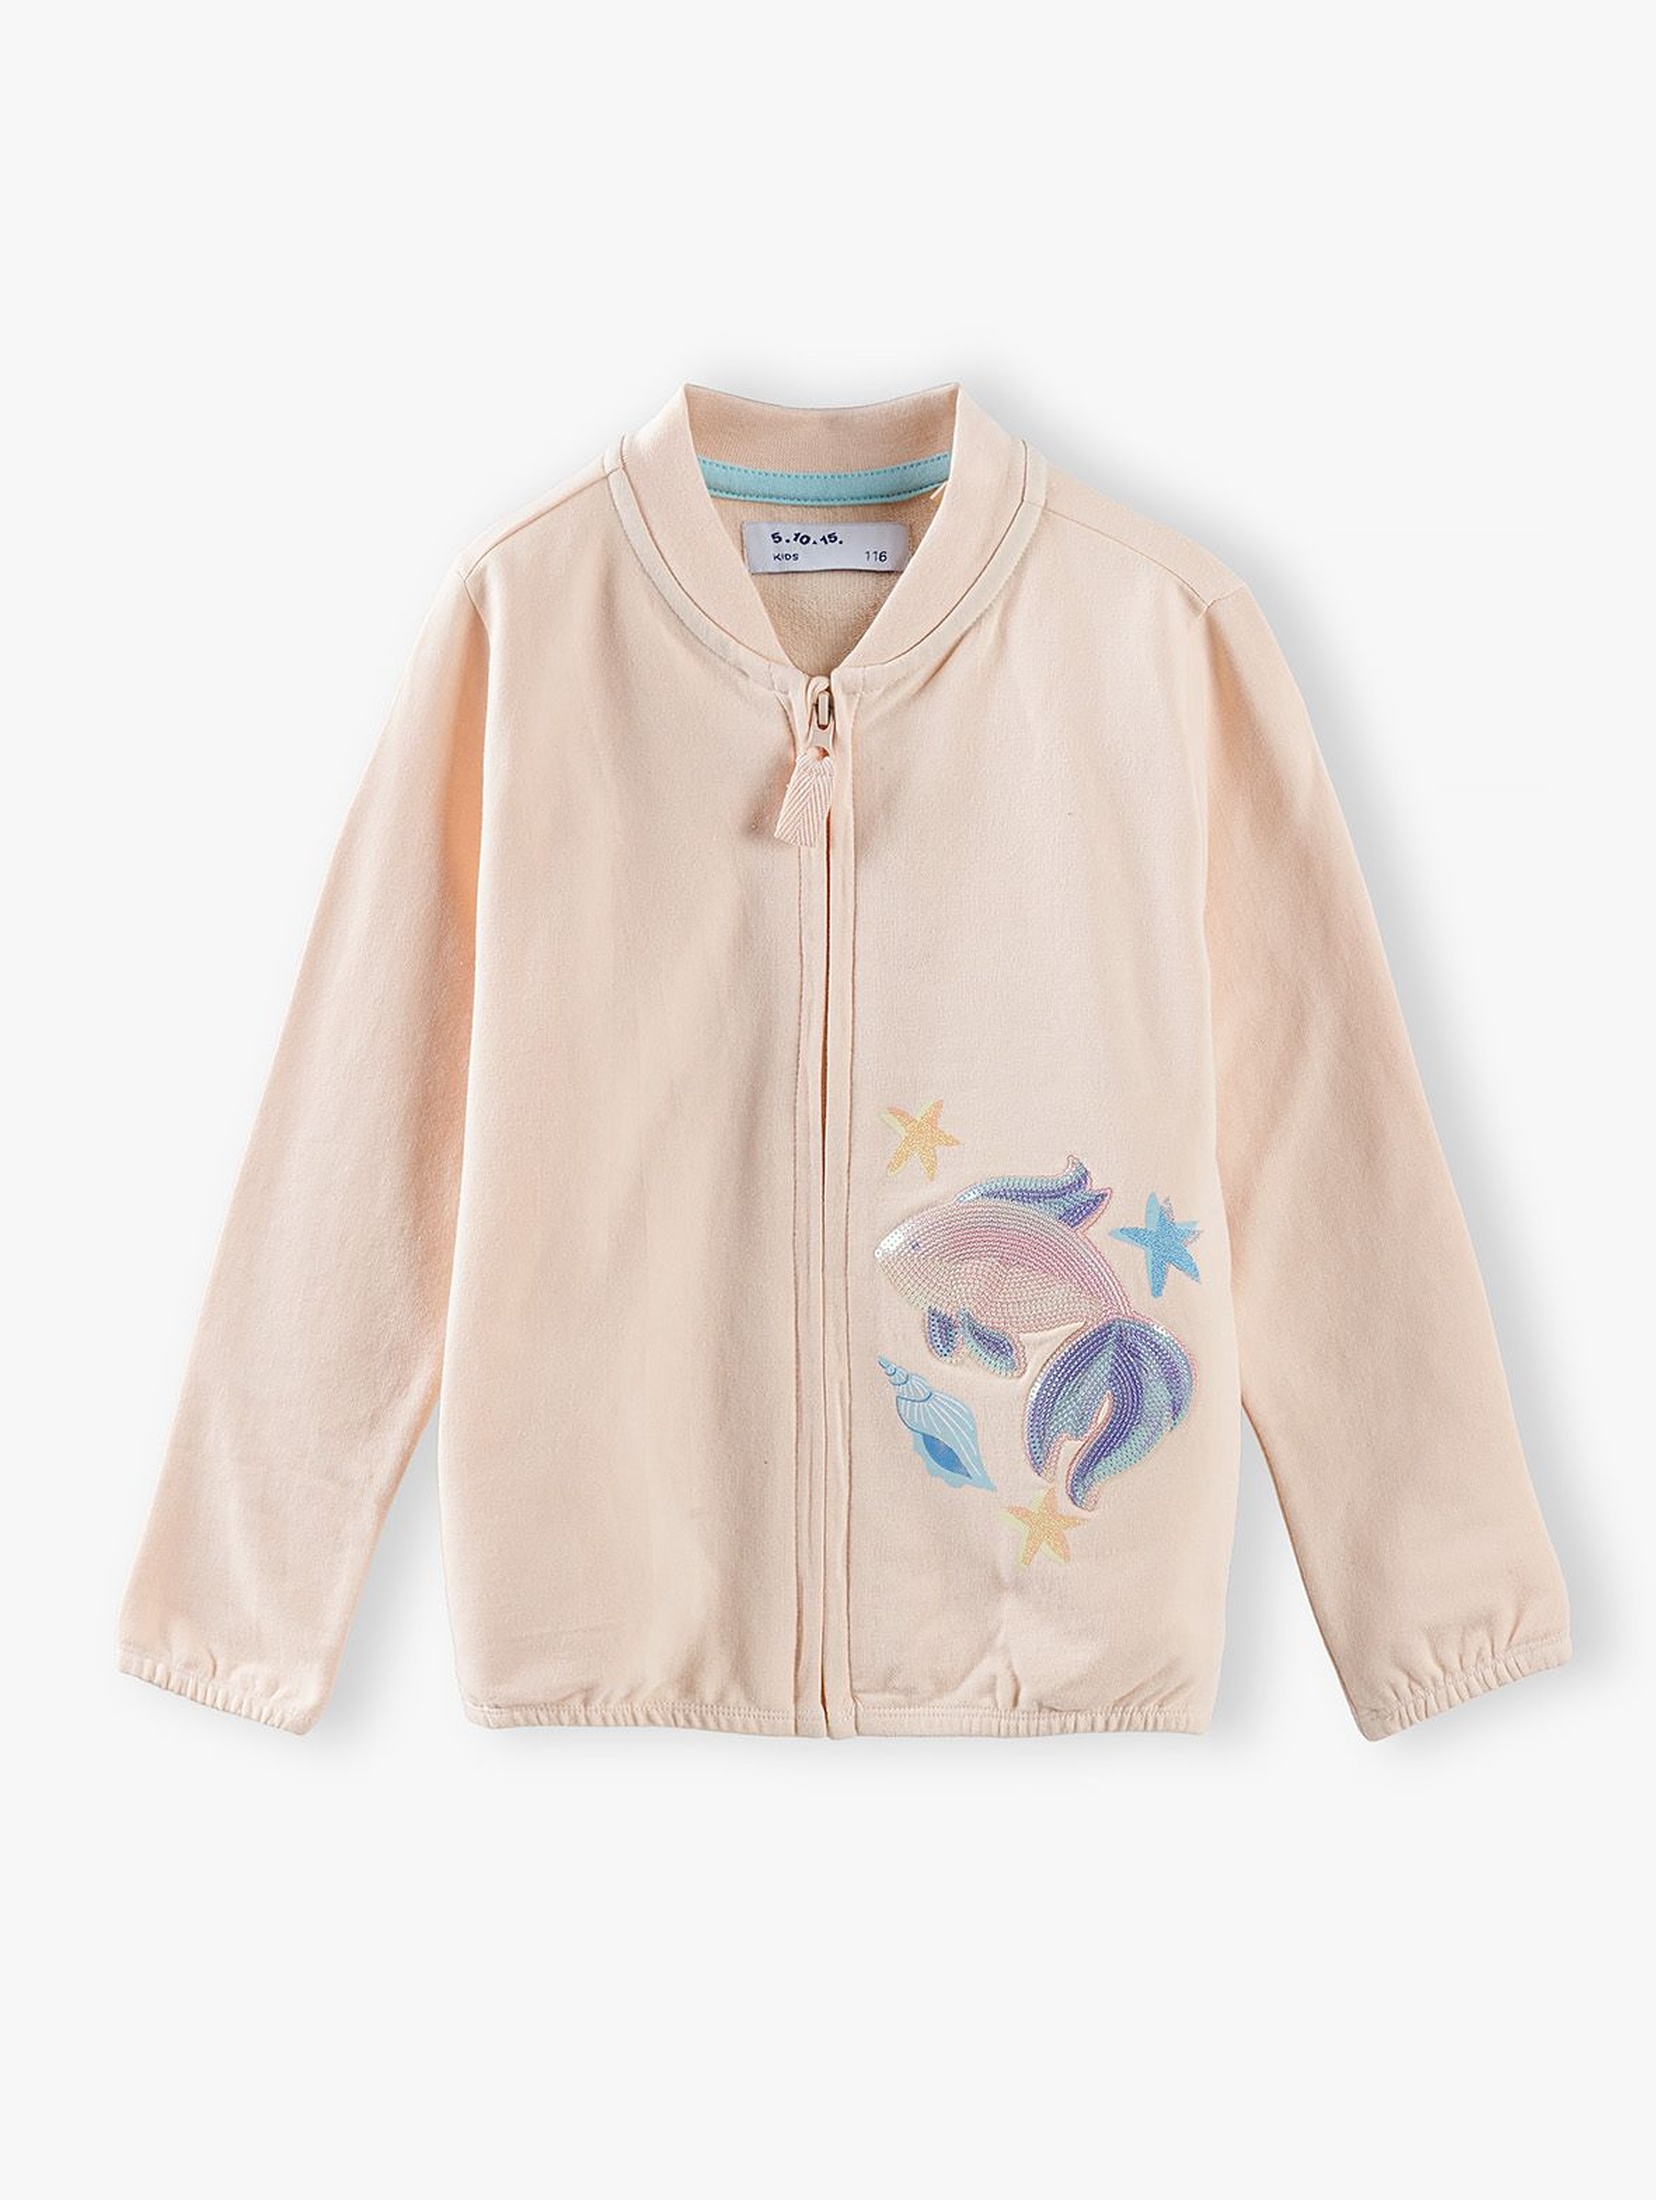 Bluza dresowa dziewczęca połyskującą z rybką - różowa